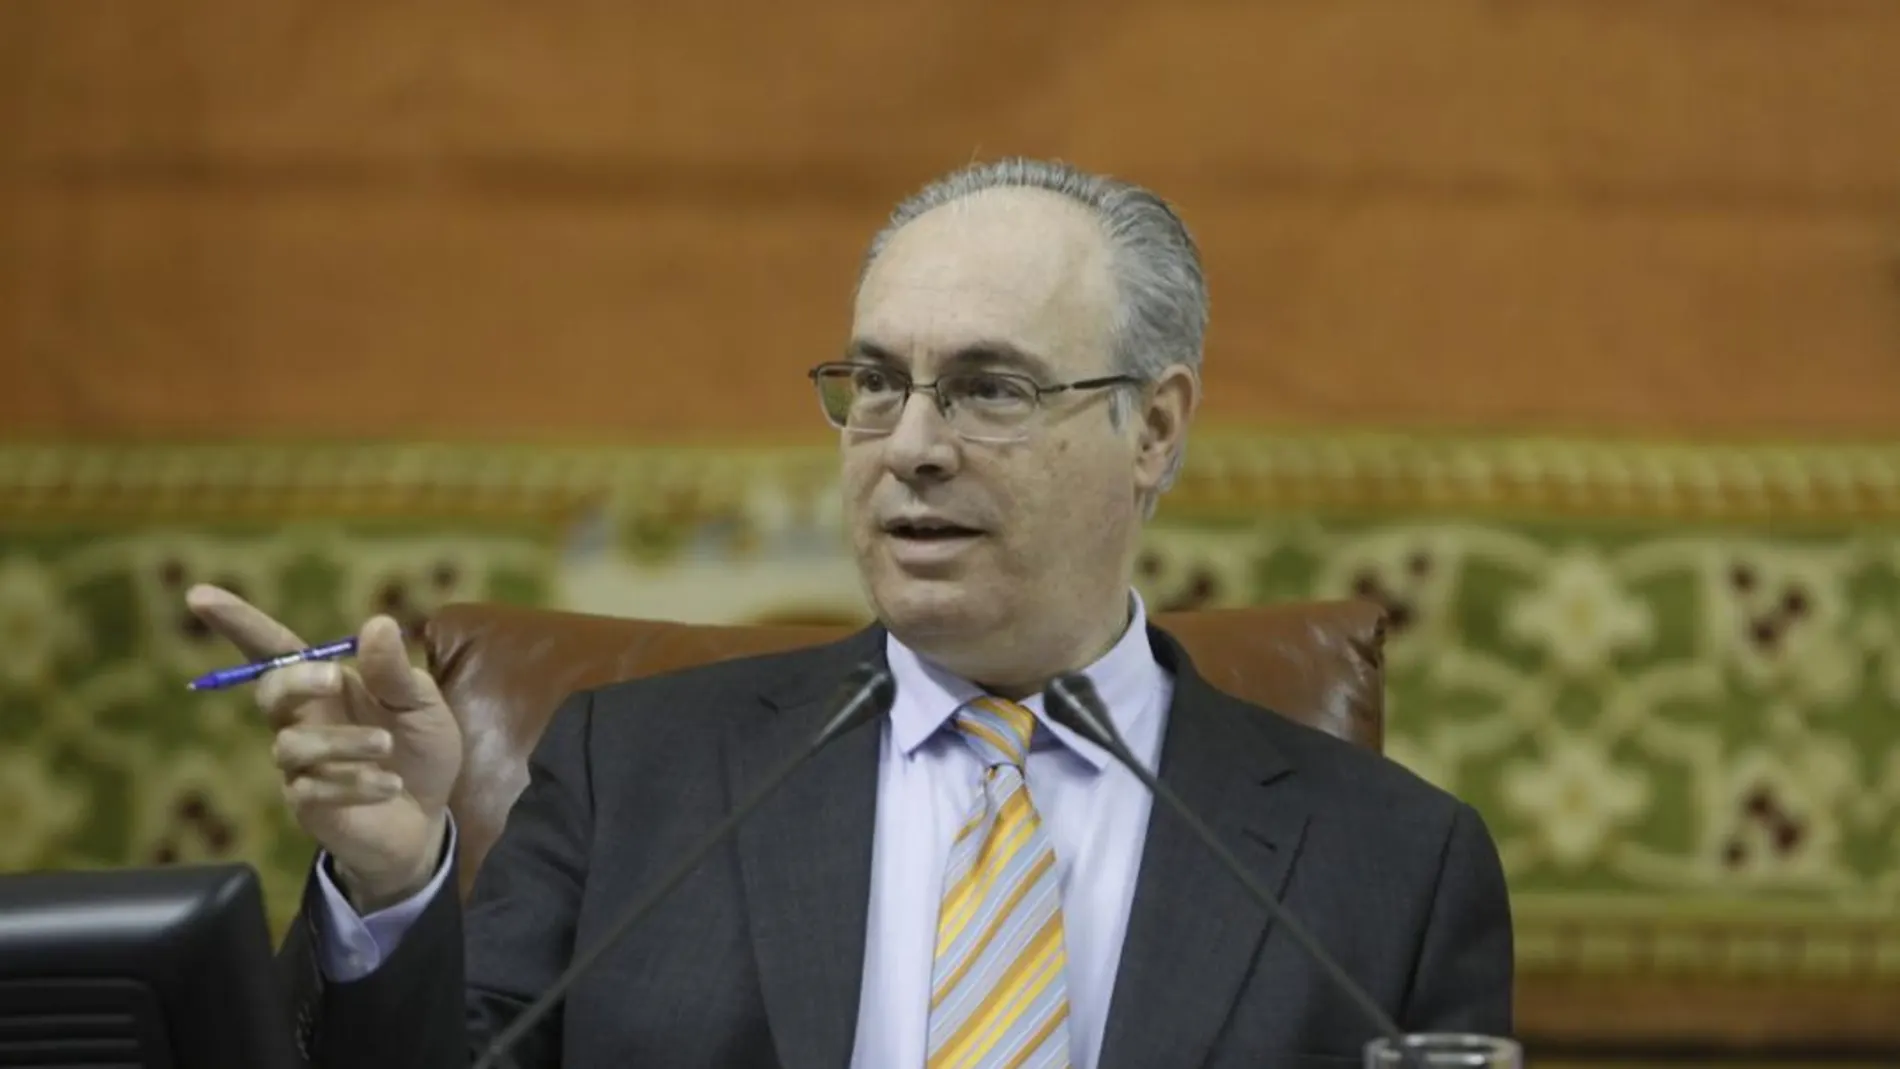 El presidente del Parlamento andaluz es en la presente legislatura Juan Pablo Durán